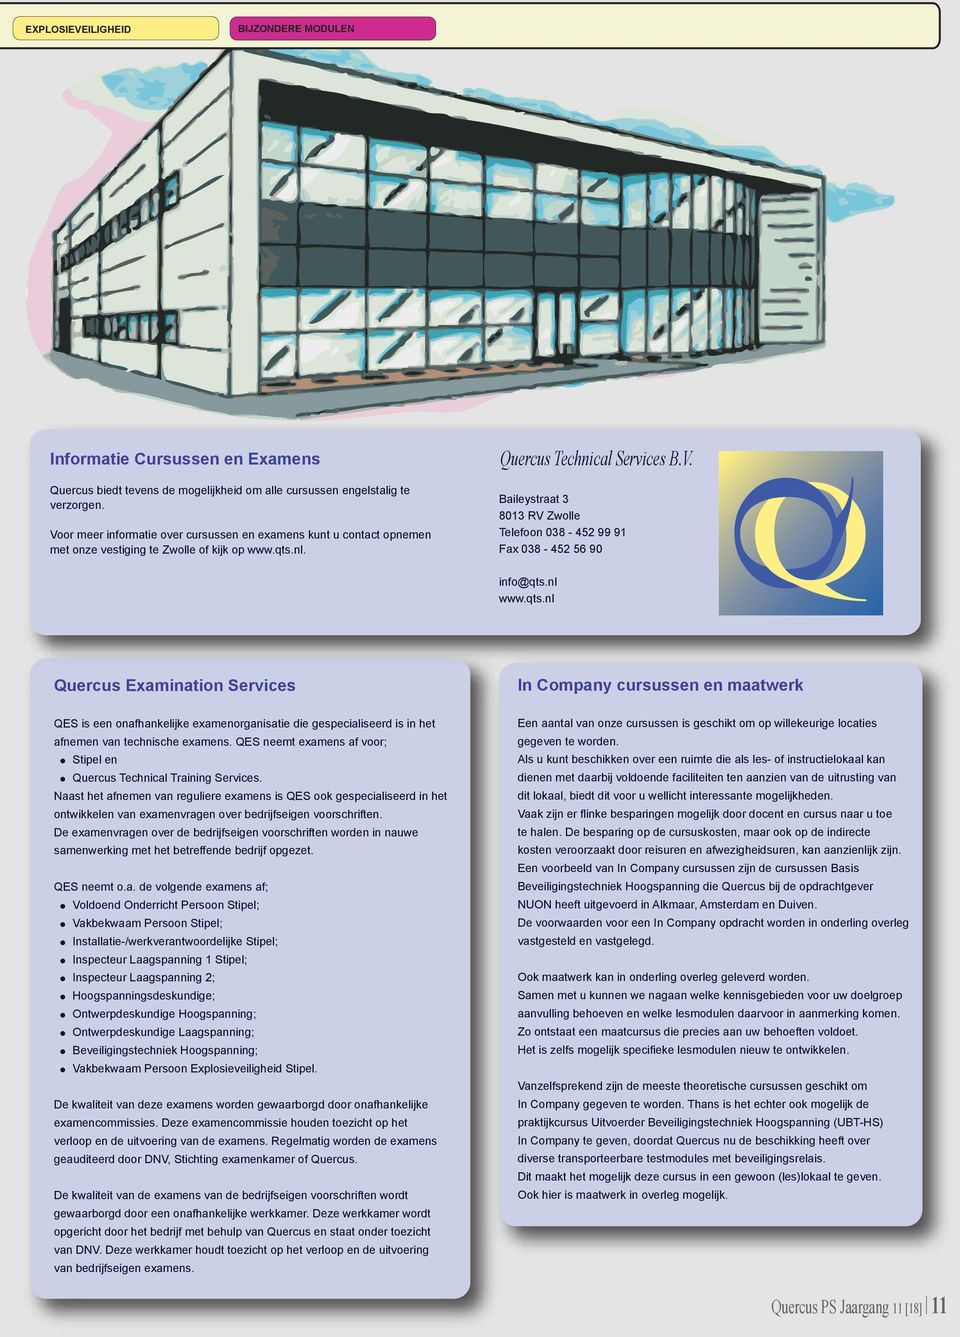 nl www.qts.nl Quercus Examination Services In Company cursussen en maatwerk QES is een onafhankelijke examenorganisatie die gespecialiseerd is in het afnemen van technische examens.